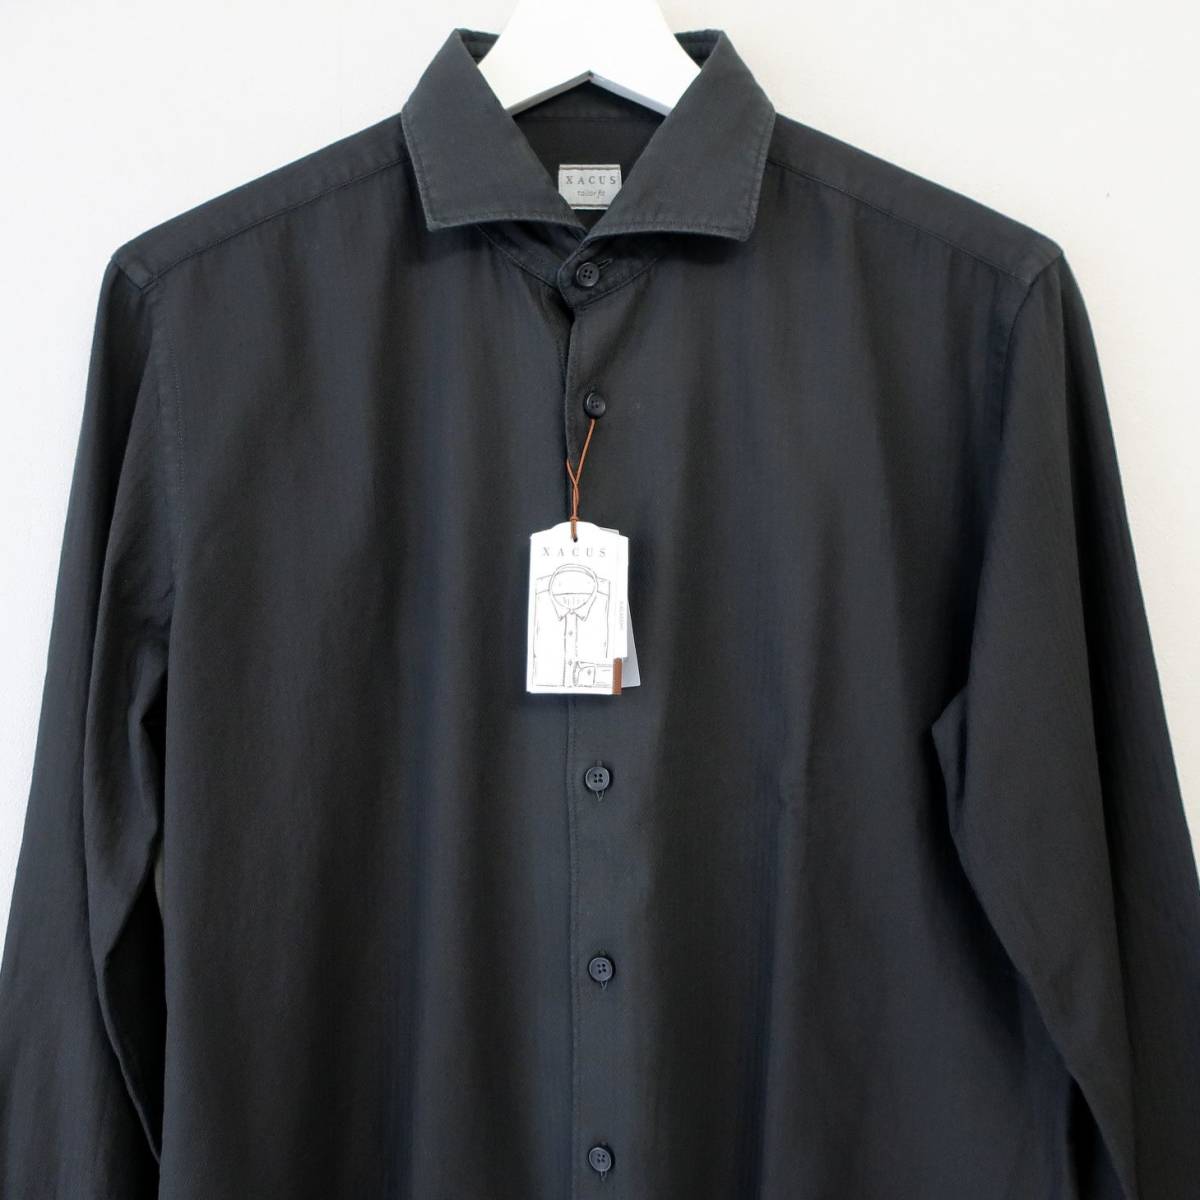 新品 未使用 XACUS ザッカス 最高級 メンズ ドレスシャツ シャドー ヘリンボーン 長袖シャツ シャツ 黒 ダークグレー 40 Mサイズ Lサイズ_画像3